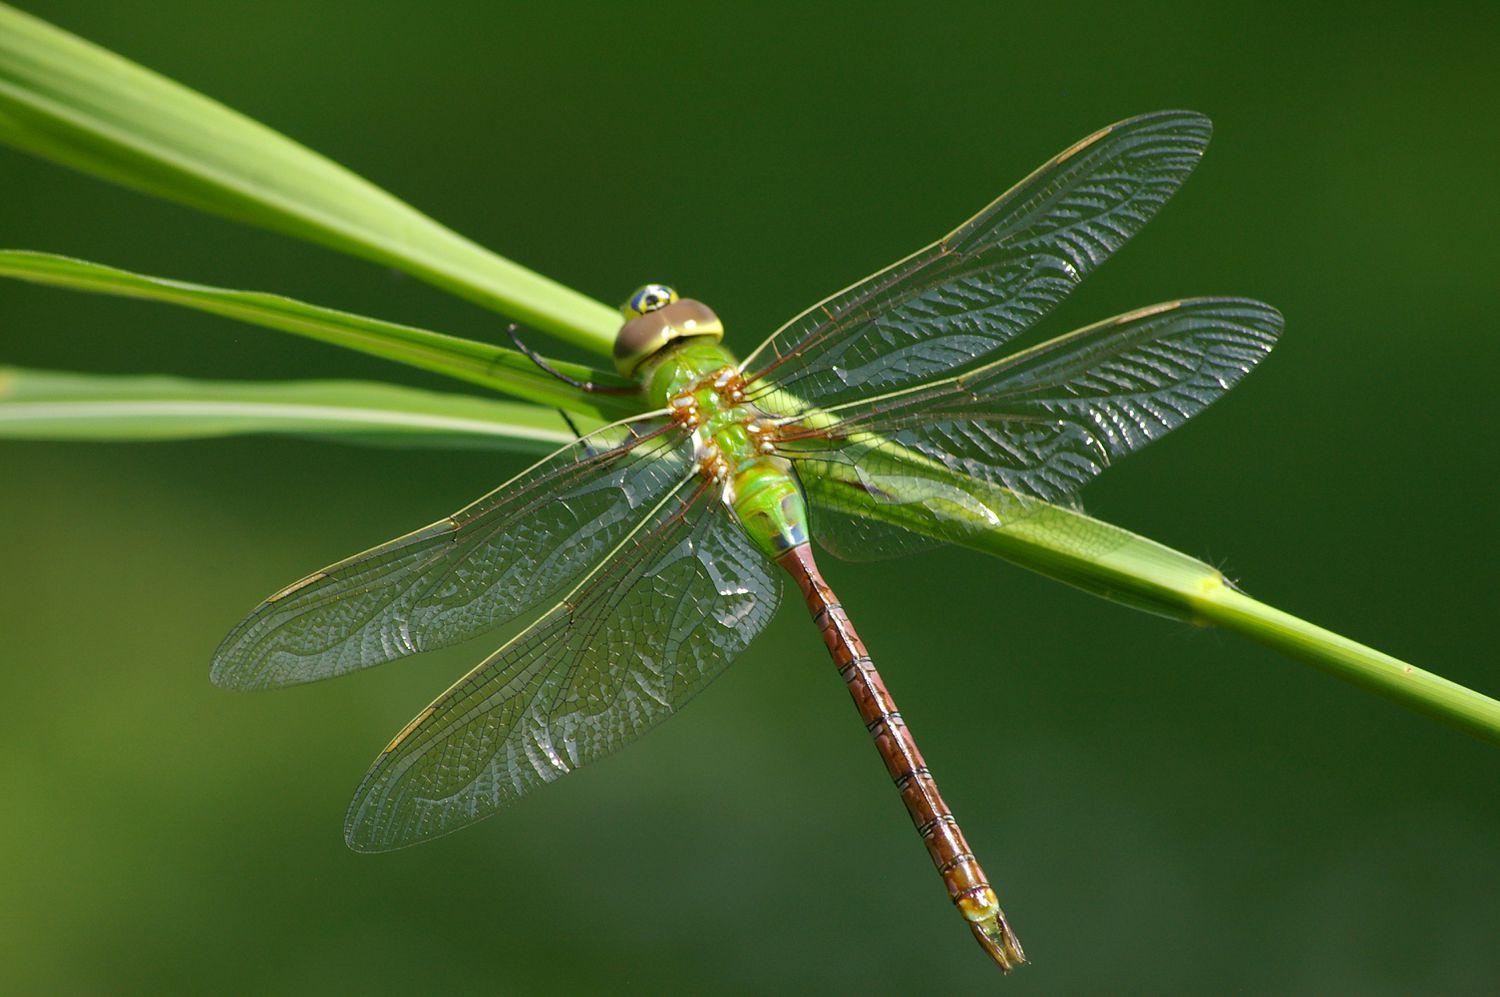 Green darner dragonfly on grass